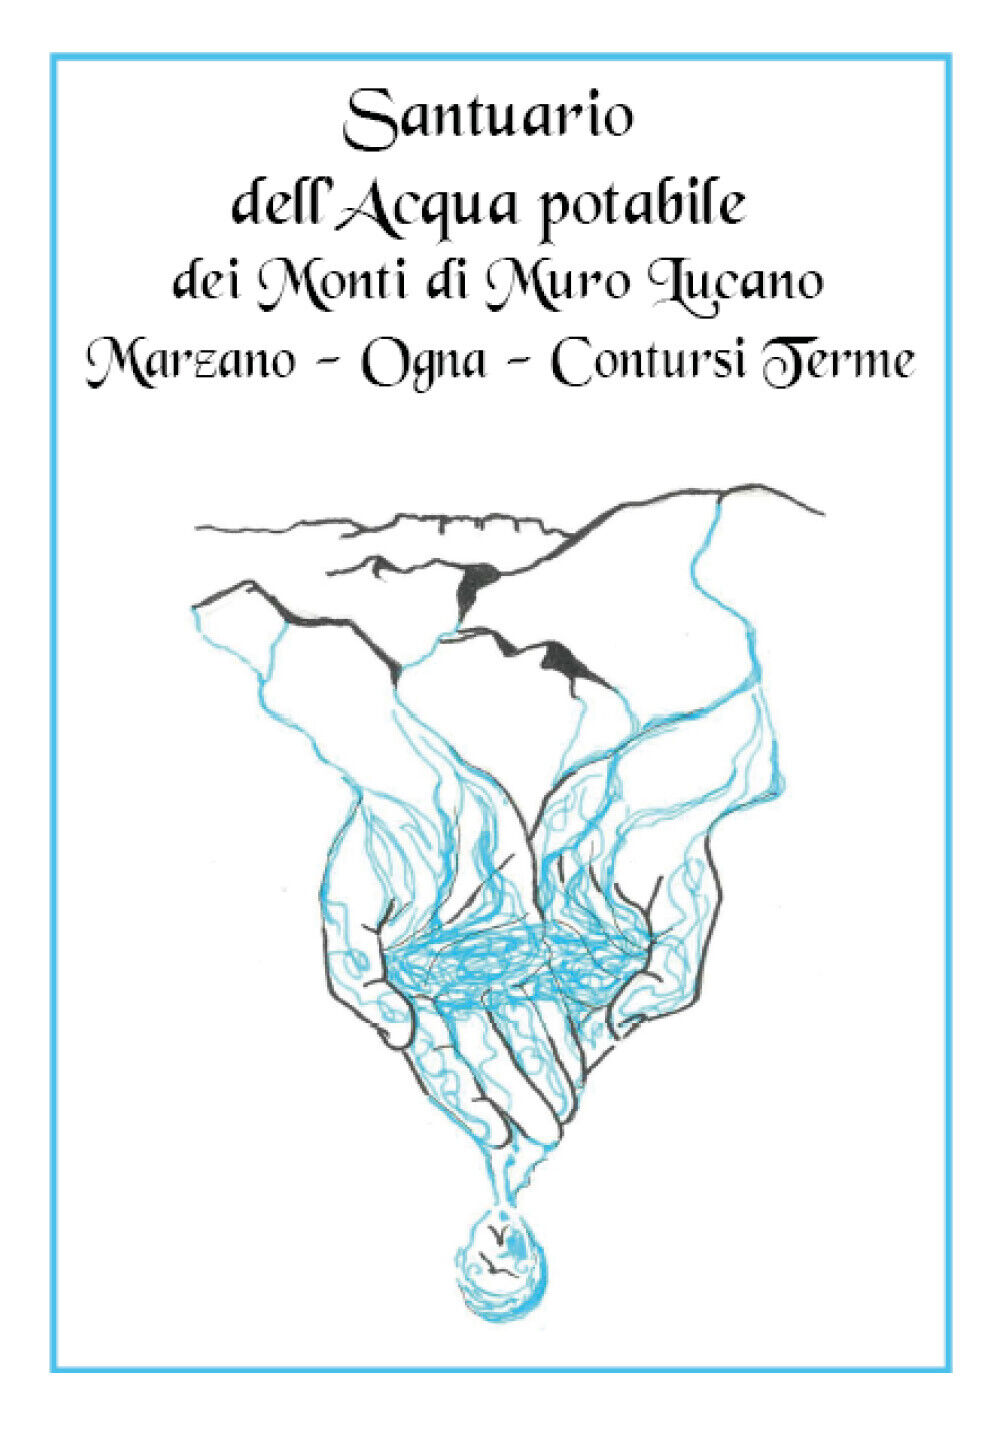 Santuario delL'acqua potabile dei Monti di Muro Lucano, Marzano, Ogna, Contursi 